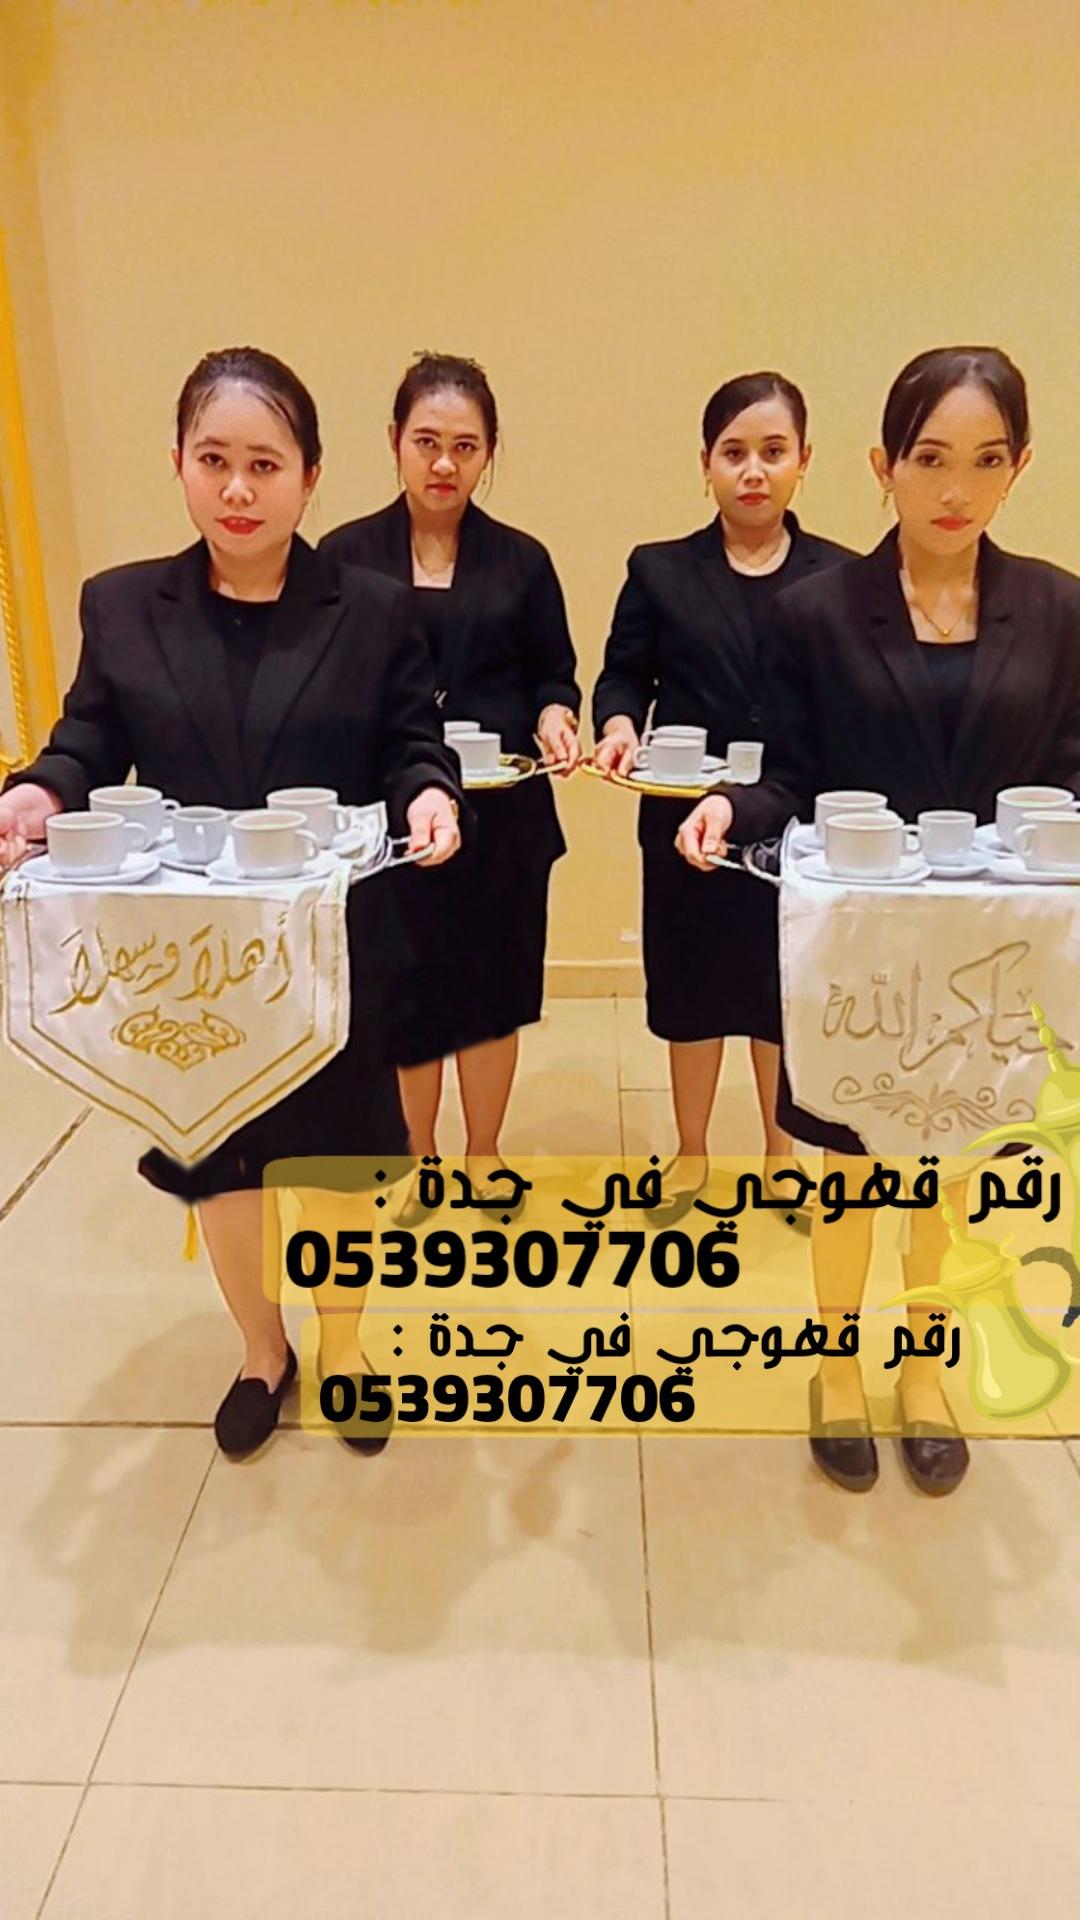 ضيافة قهوة رجال نساء في جدة,0539307706 196703233